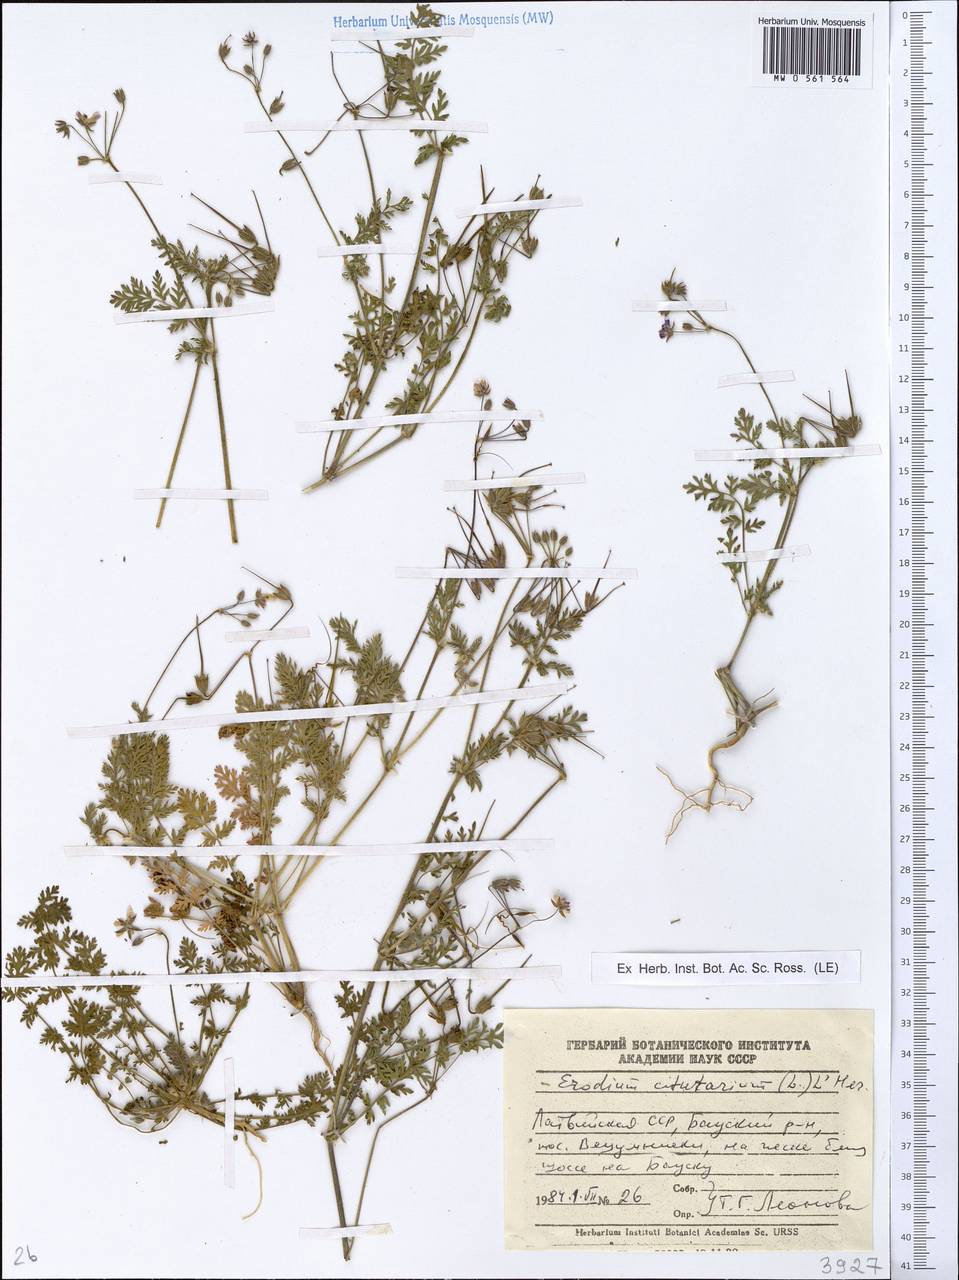 Erodium cicutarium, Eastern Europe, Latvia (E2b) (Latvia)